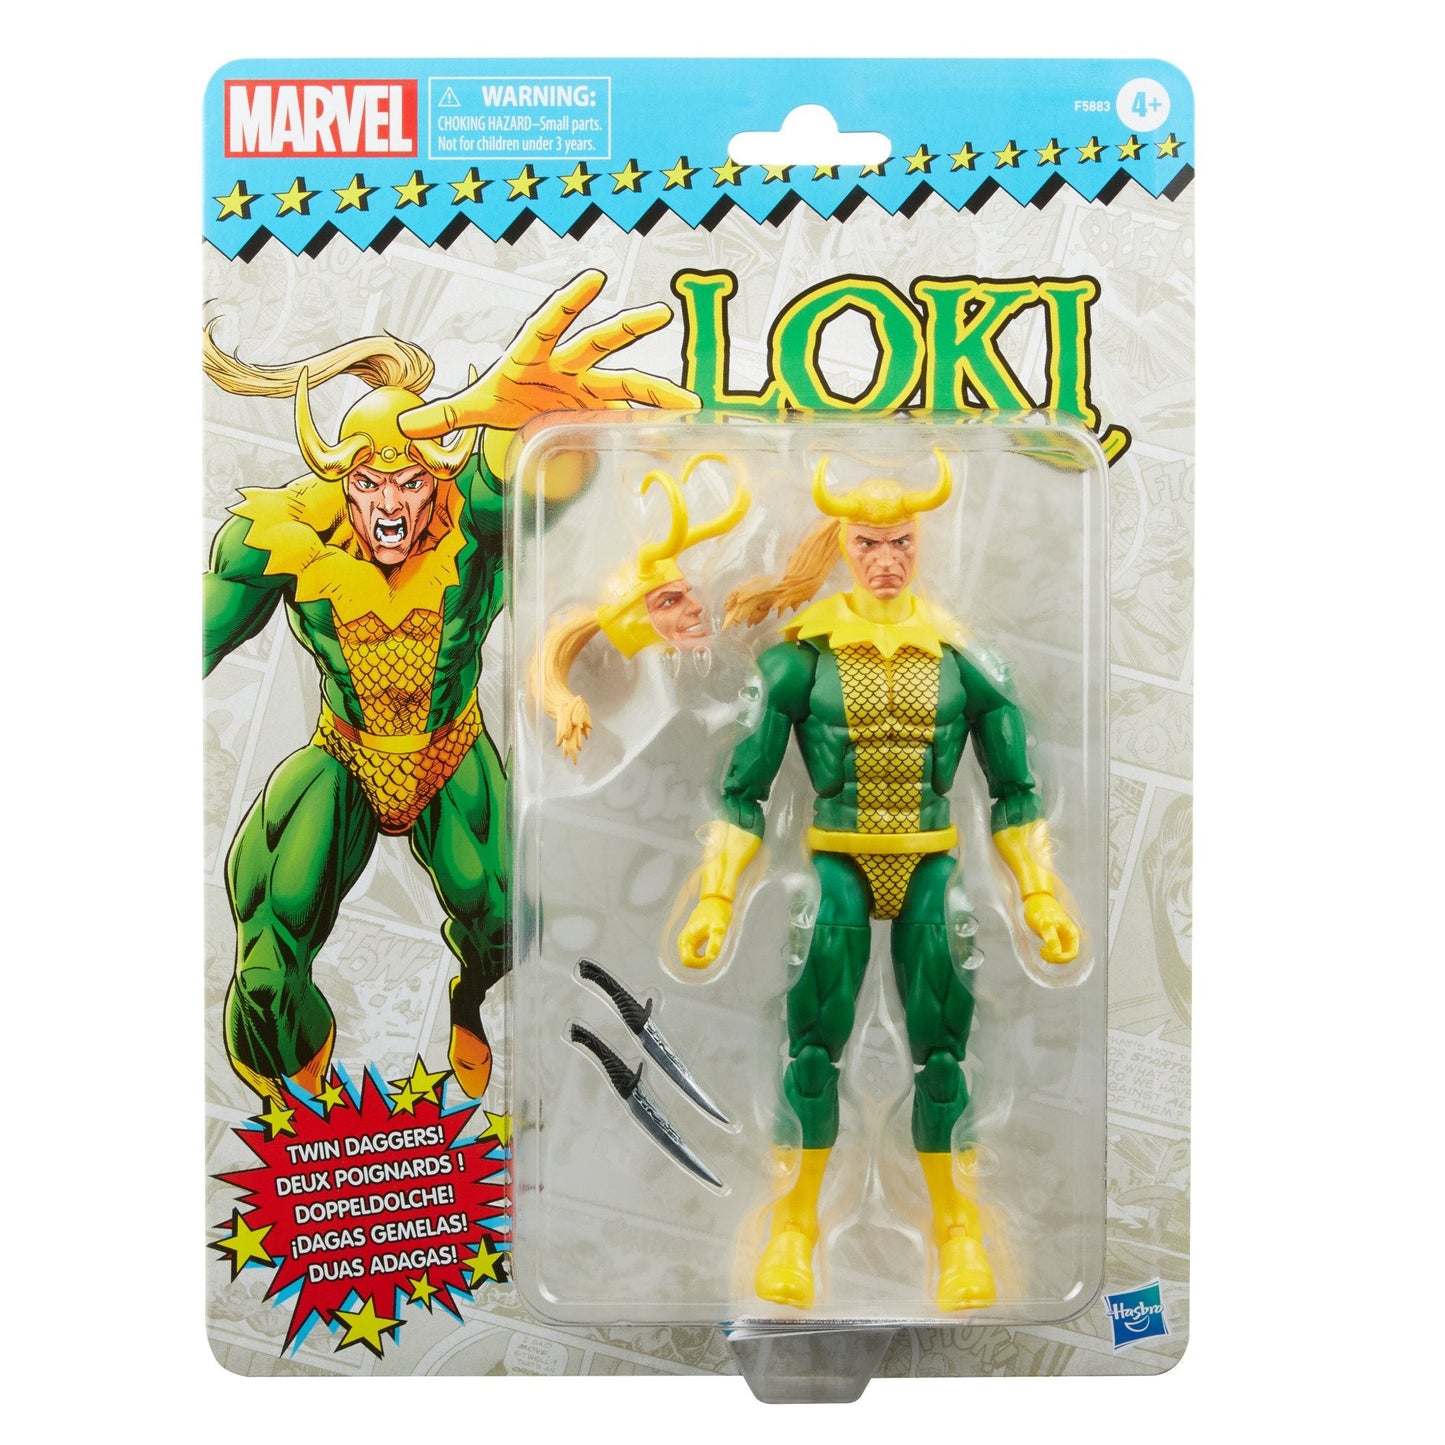 MARVEL : LOKI - Comic Loki Hasbro Action Figure